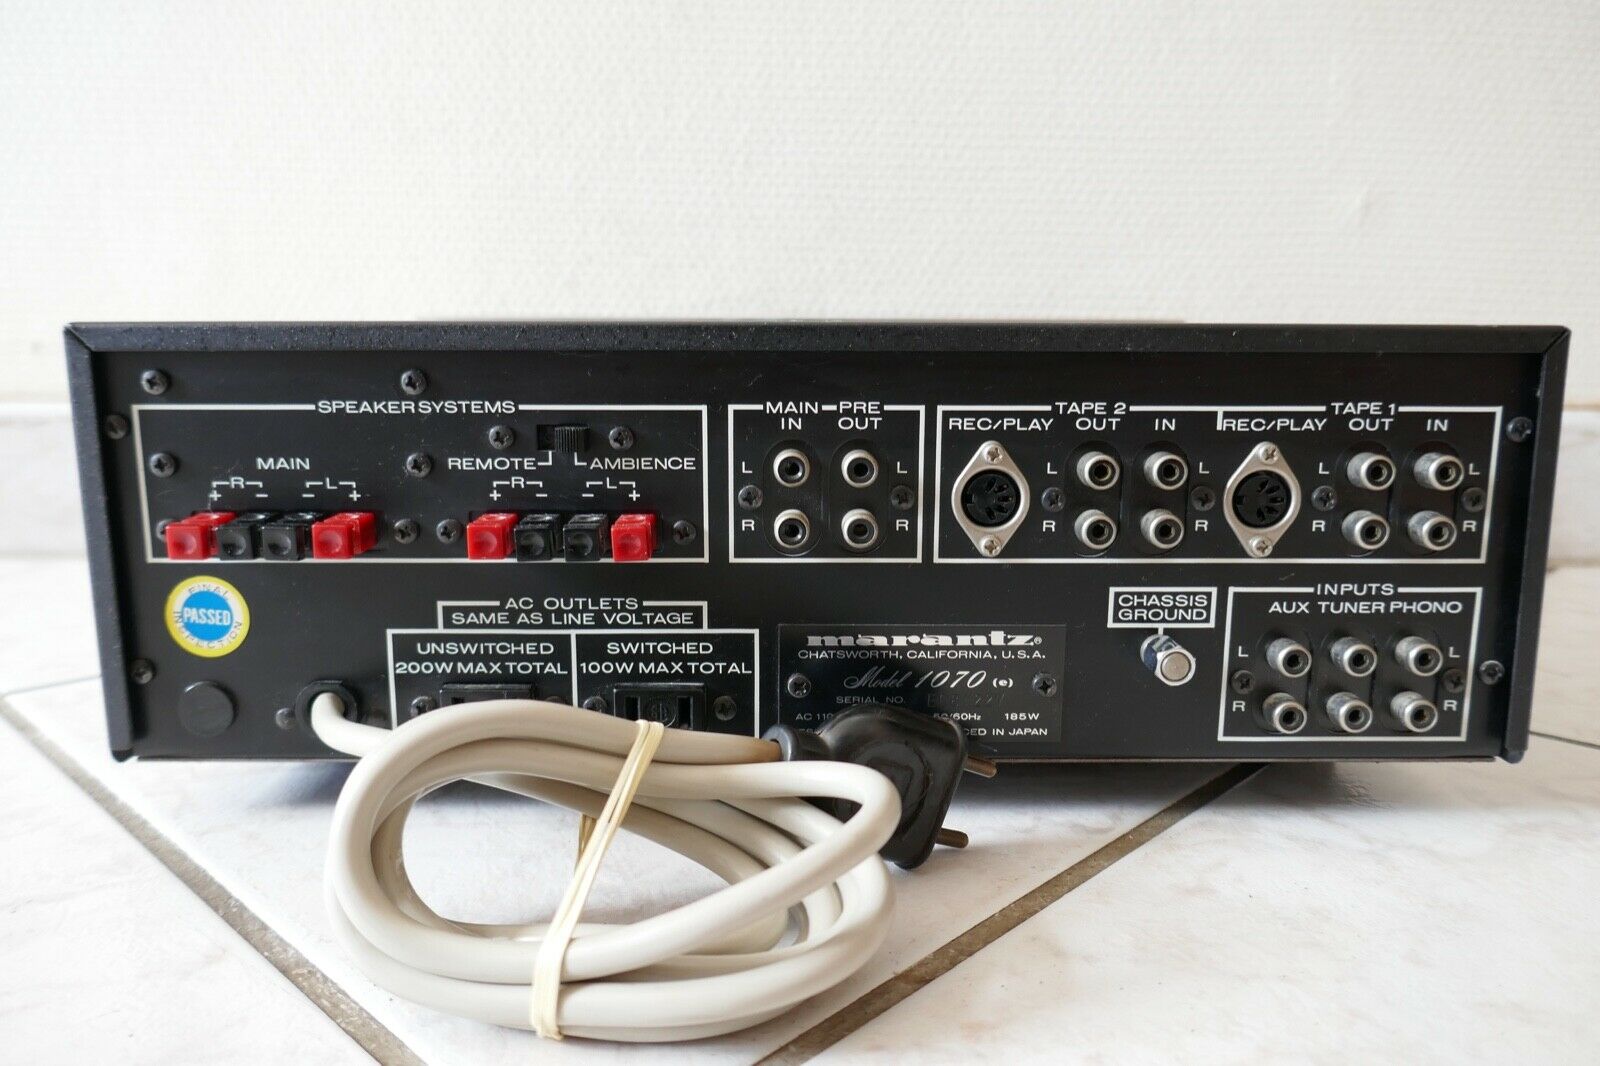 amplificateur amplifier marantz model 1070 vintage occasion